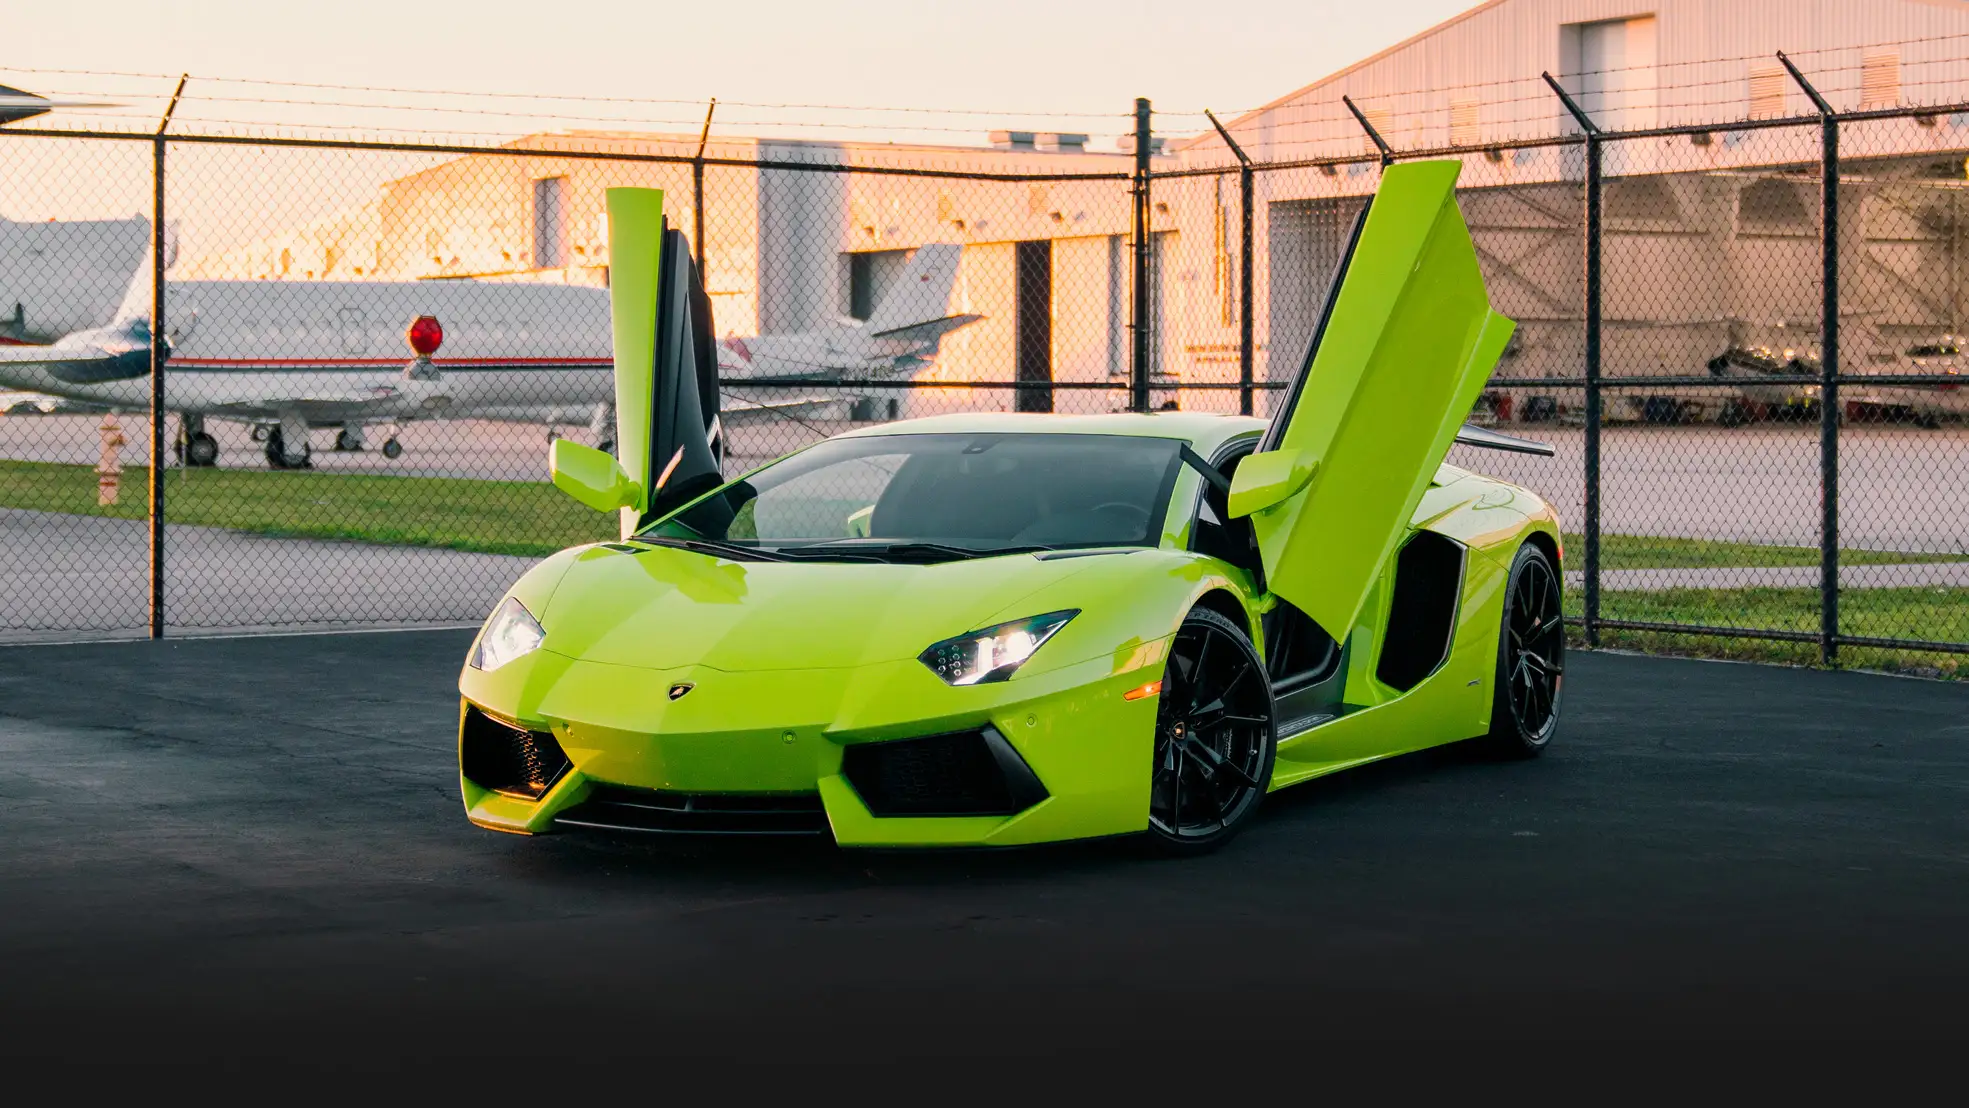 Green Lamborghini Aventador rental profile view mph club